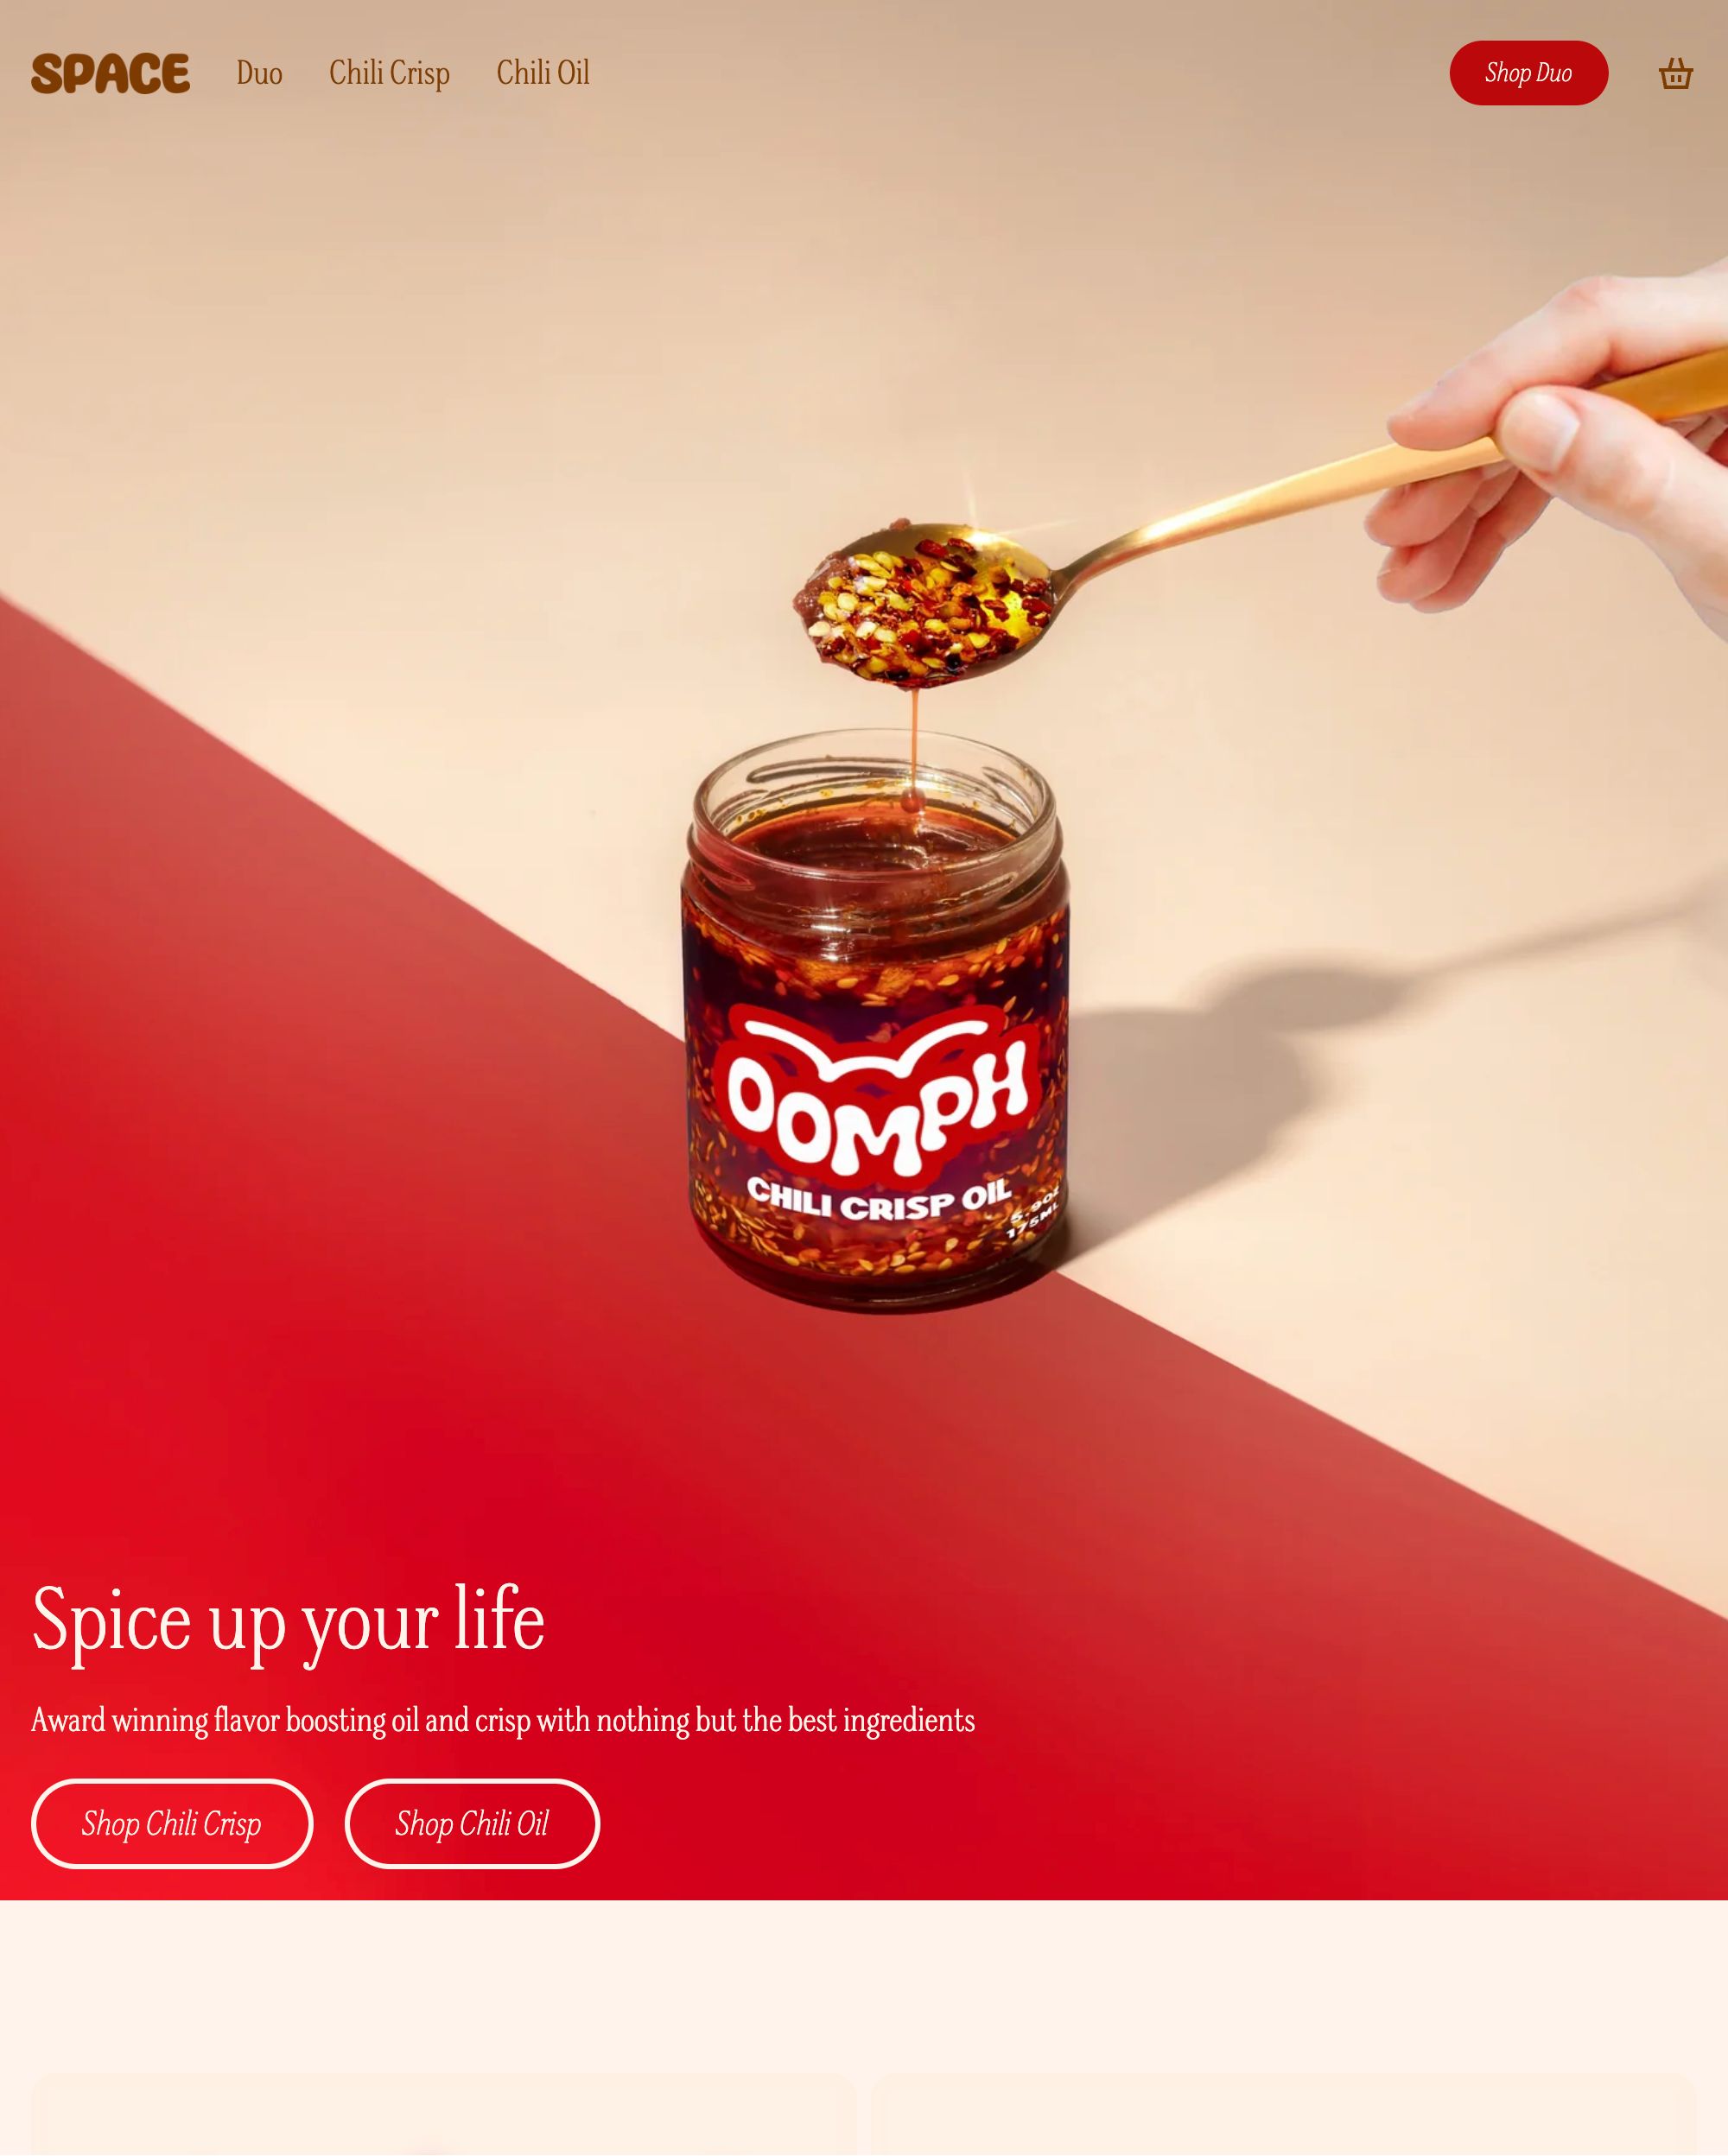 Anteprima in versione desktop del tema Space nello stile “Spice”